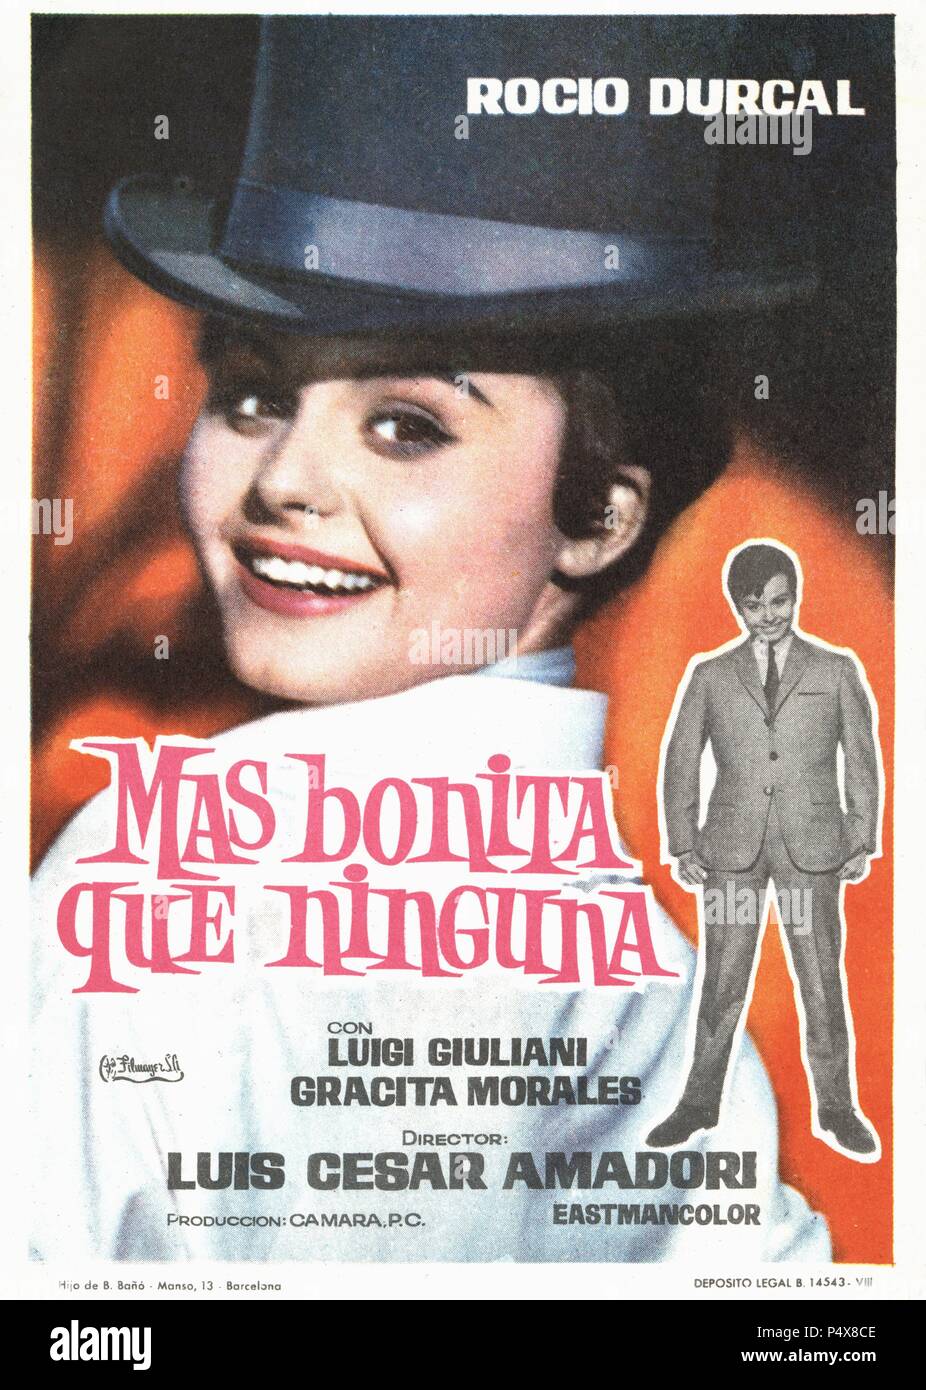 Cartel de la película Más bonita que ninguna, con Rocío Dúrcal y Luigi Giuliani, dirigida por Luis César amadori. España, 1965. Stock Photo